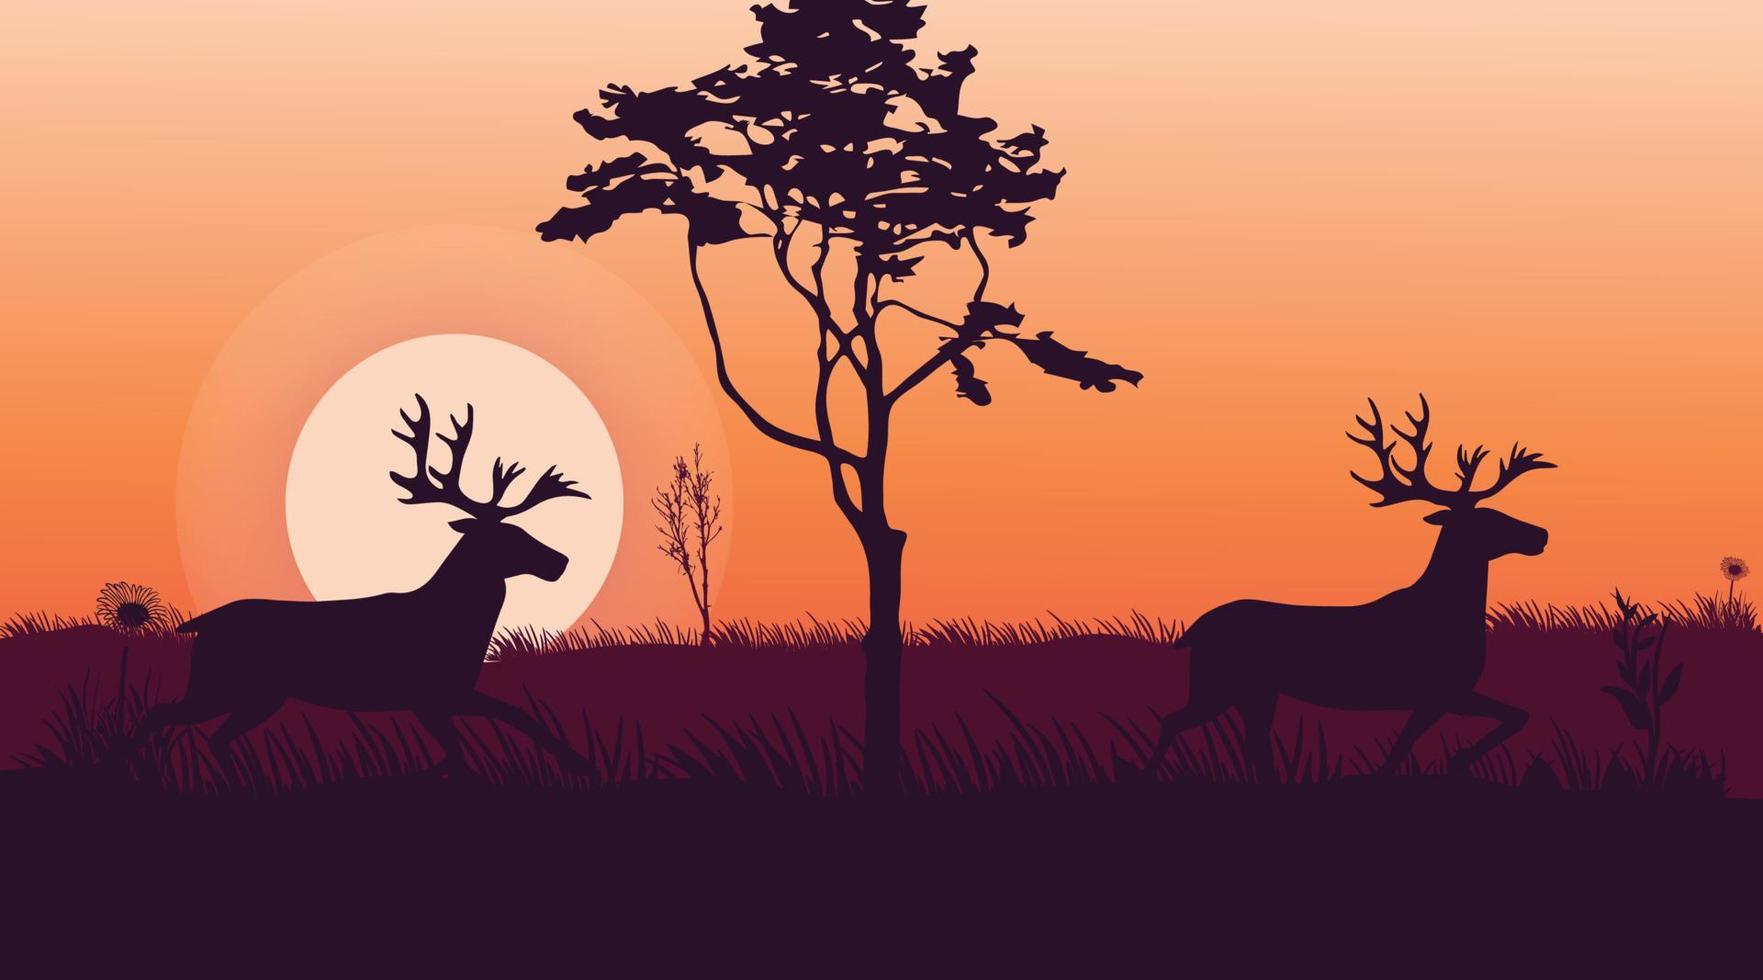 ciervos en el bosque hermoso paisaje al atardecer ilustración vectorial vector